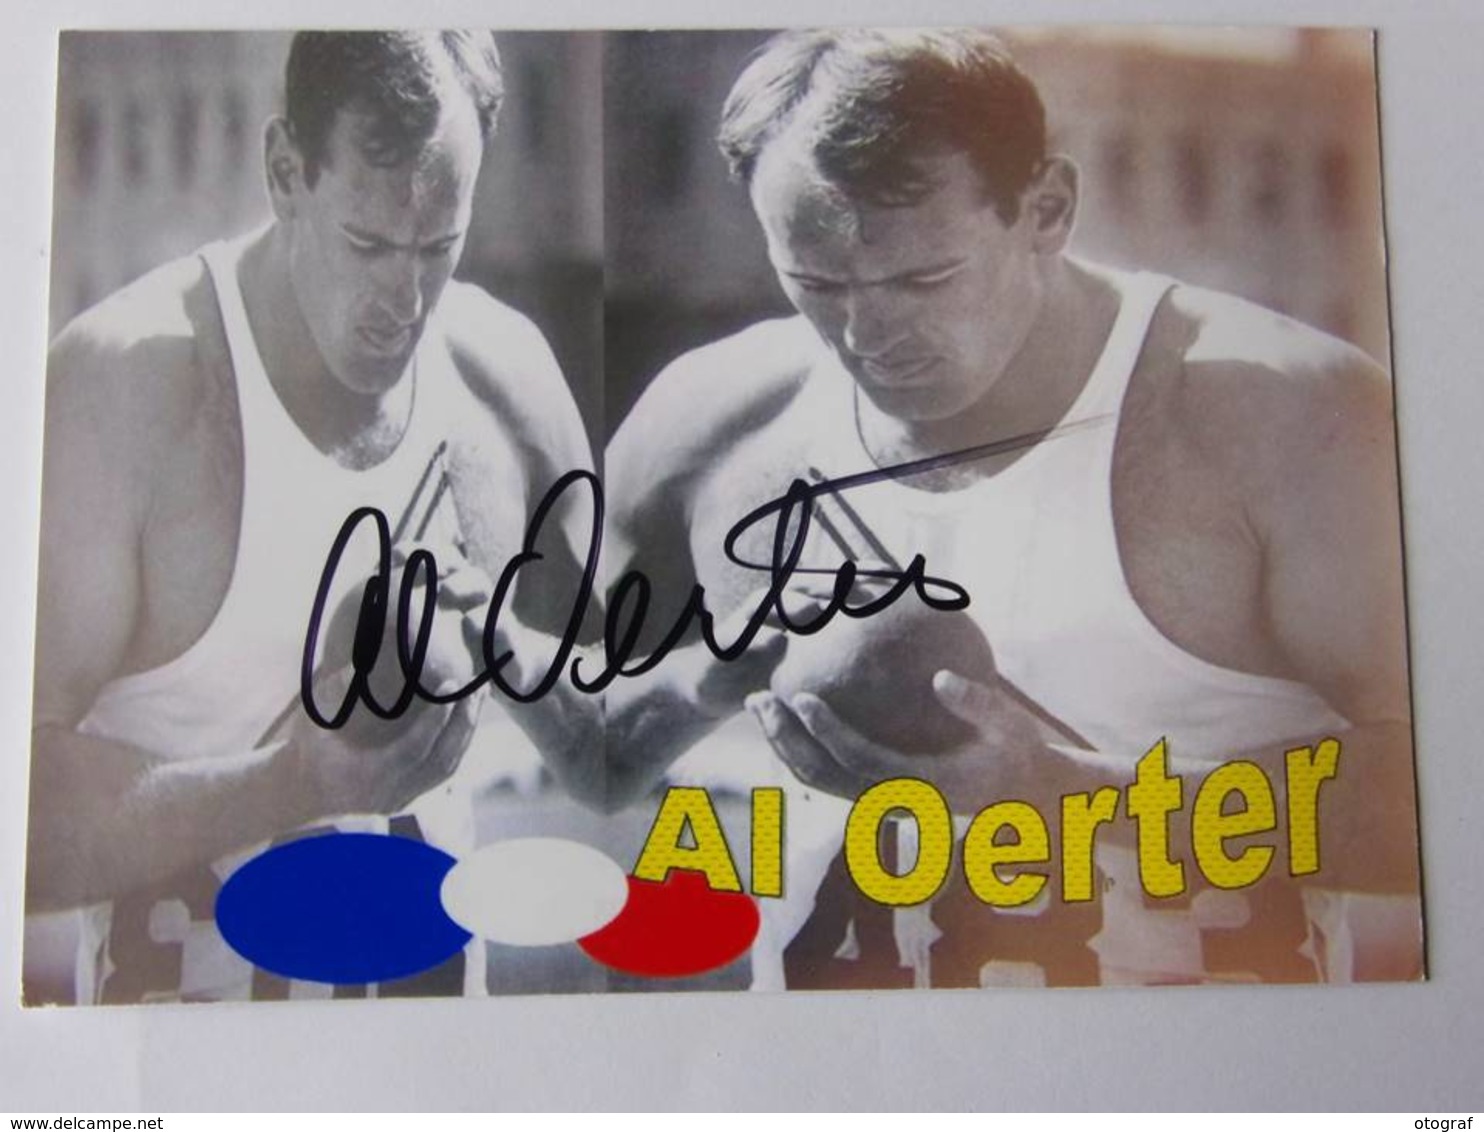 Carte Photo - Al OERTER - Signé / Hand Signed / Dédicace Authentique / Autographe - Athlétisme